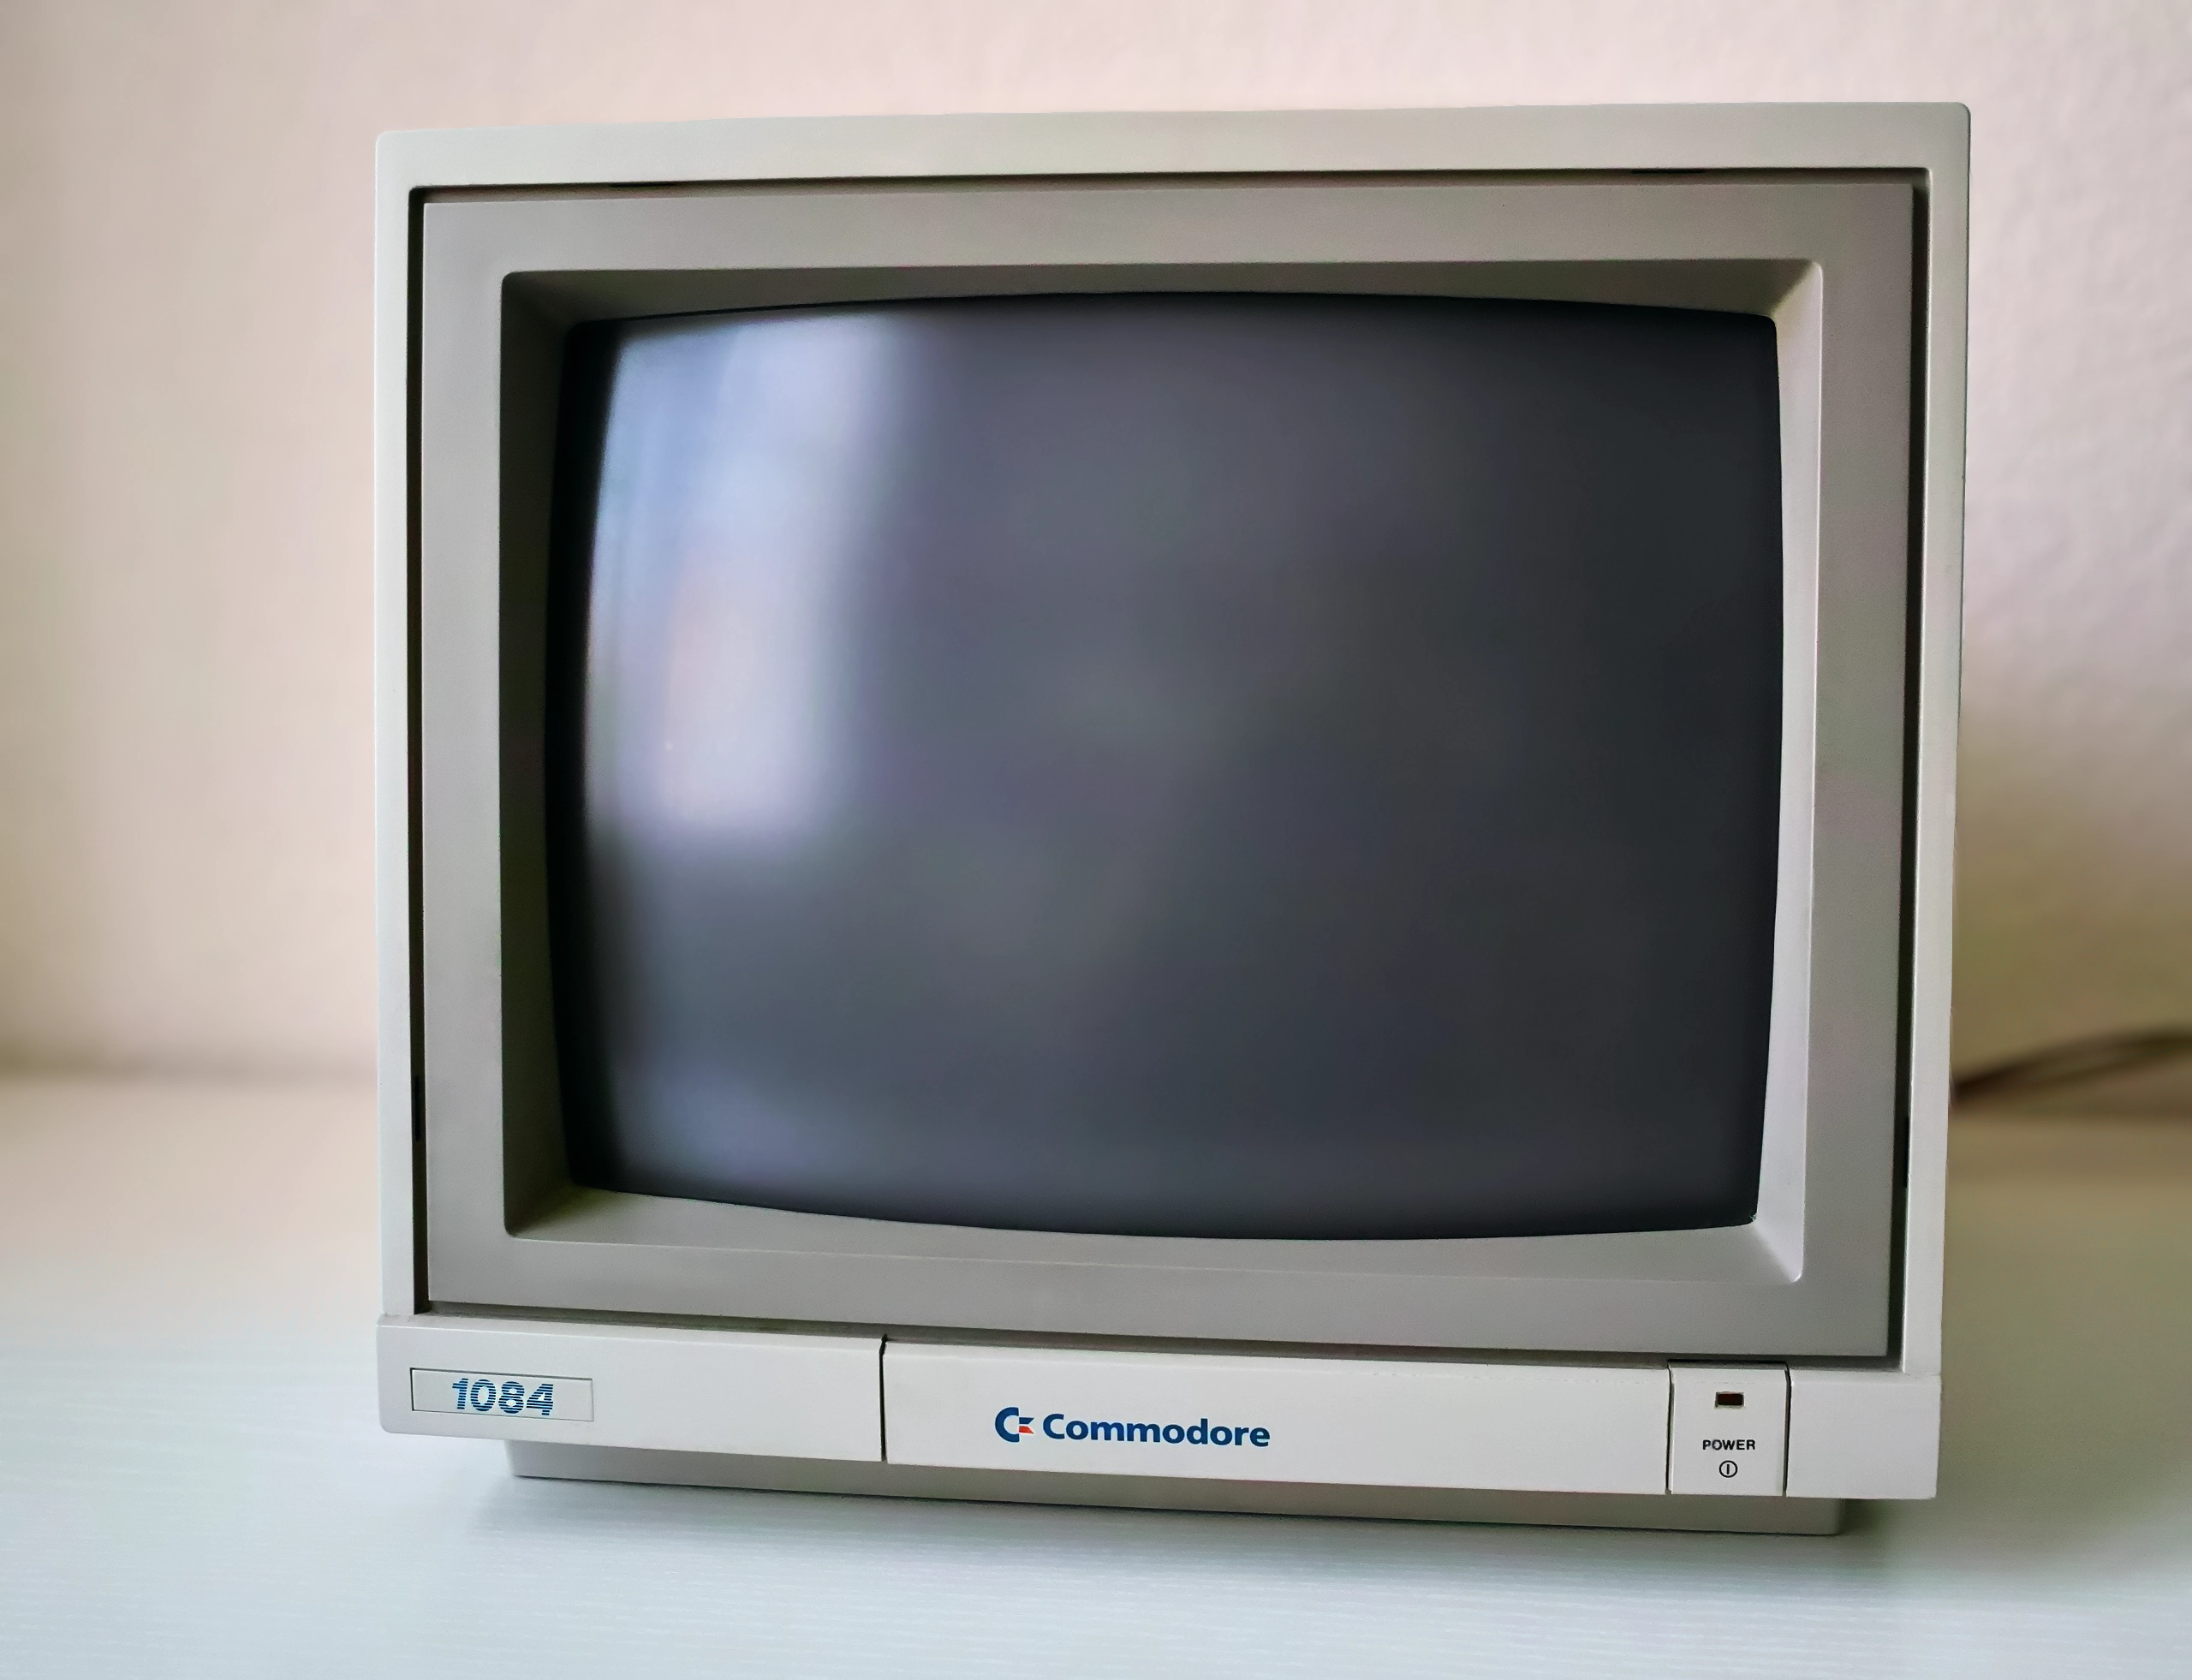 Commodore 1084 monitor